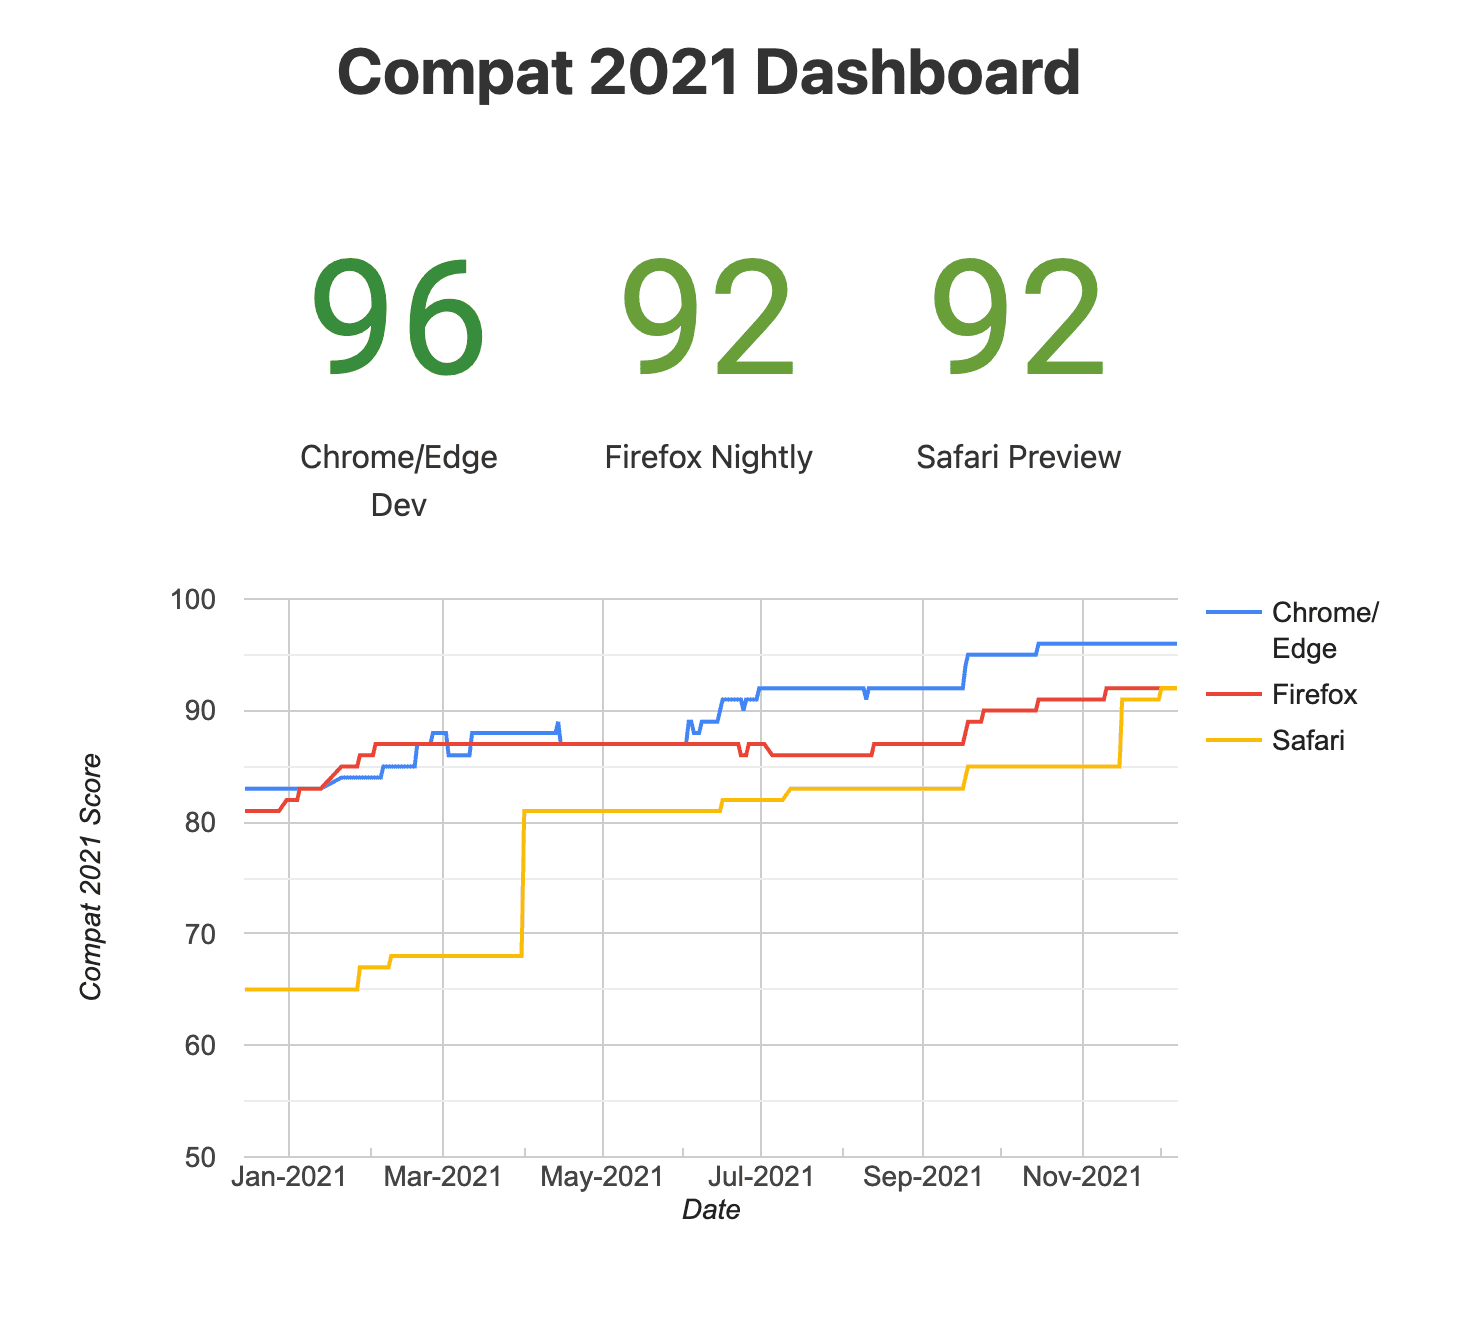 Compat&#39;ın anlık görüntüsü
2021 Kontrol Paneli (deneysel tarayıcılar)